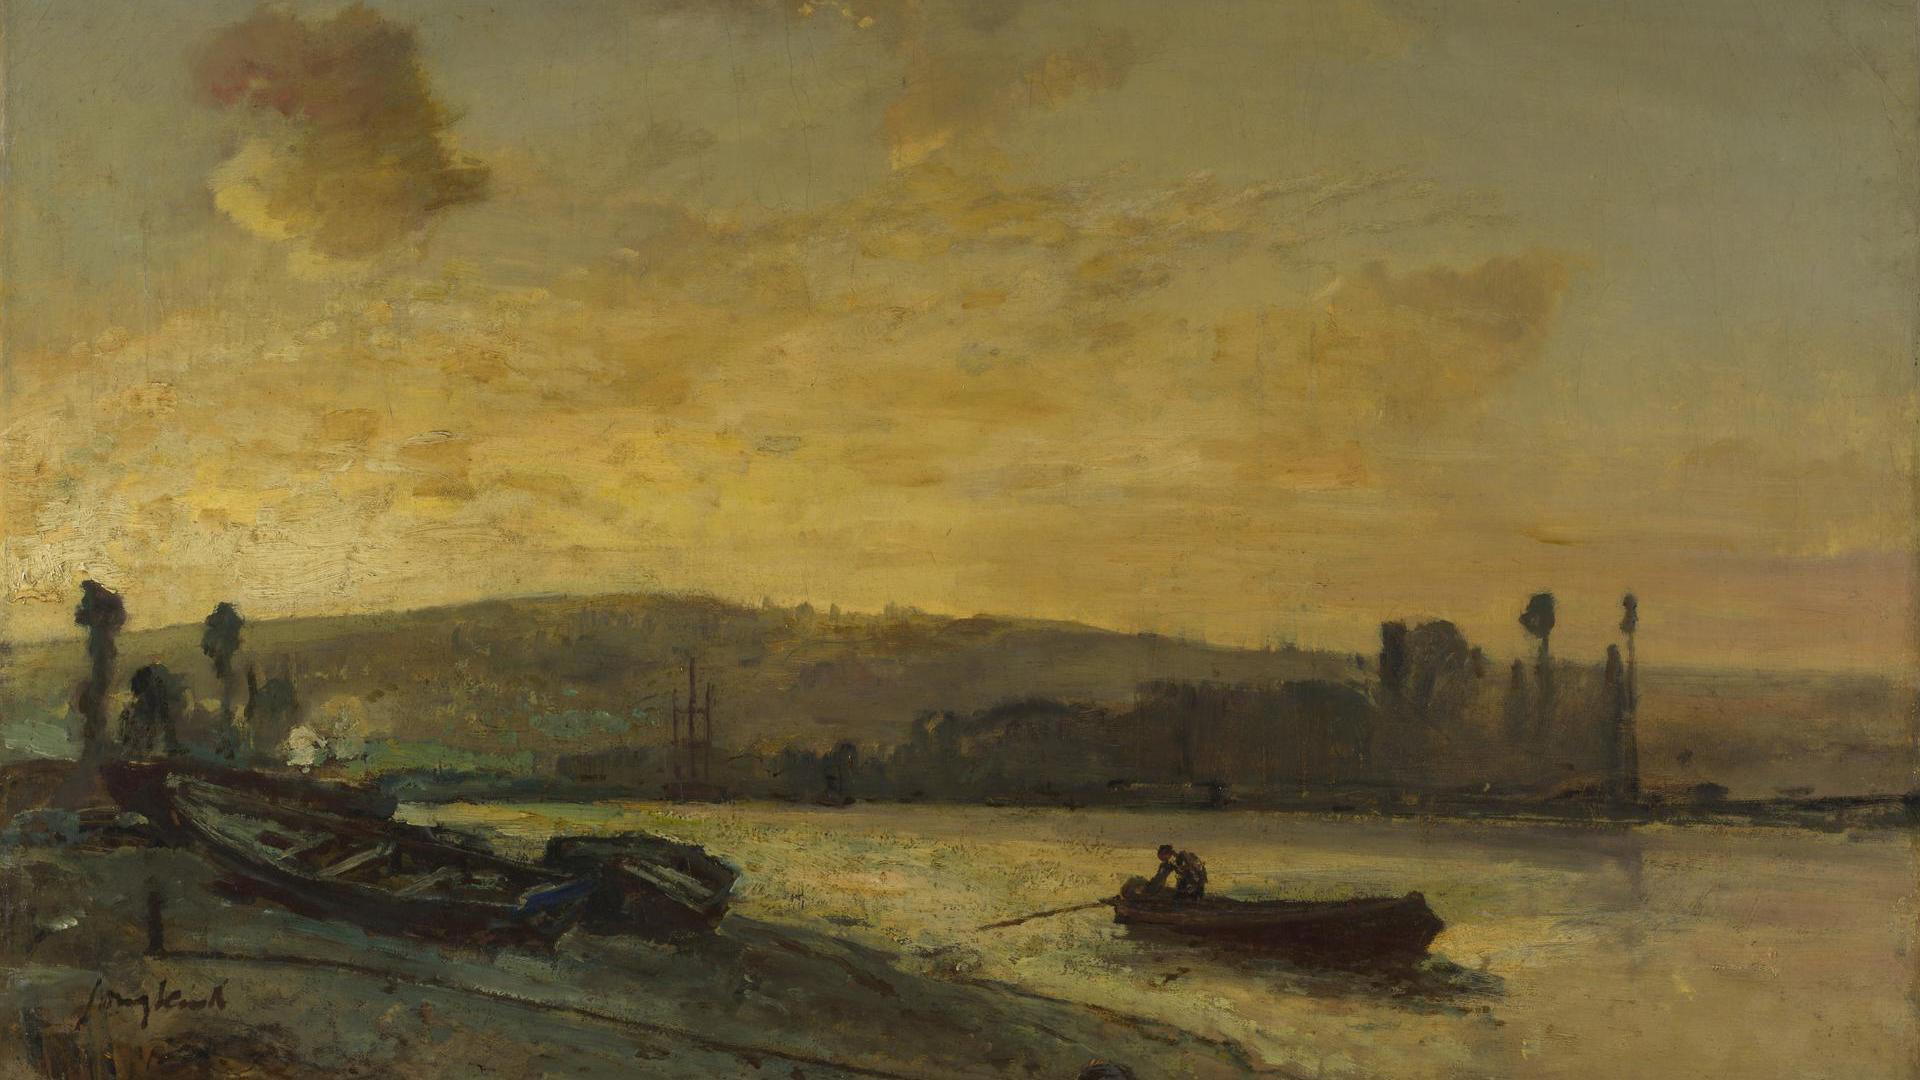 River Scene by Johan Barthold Jongkind